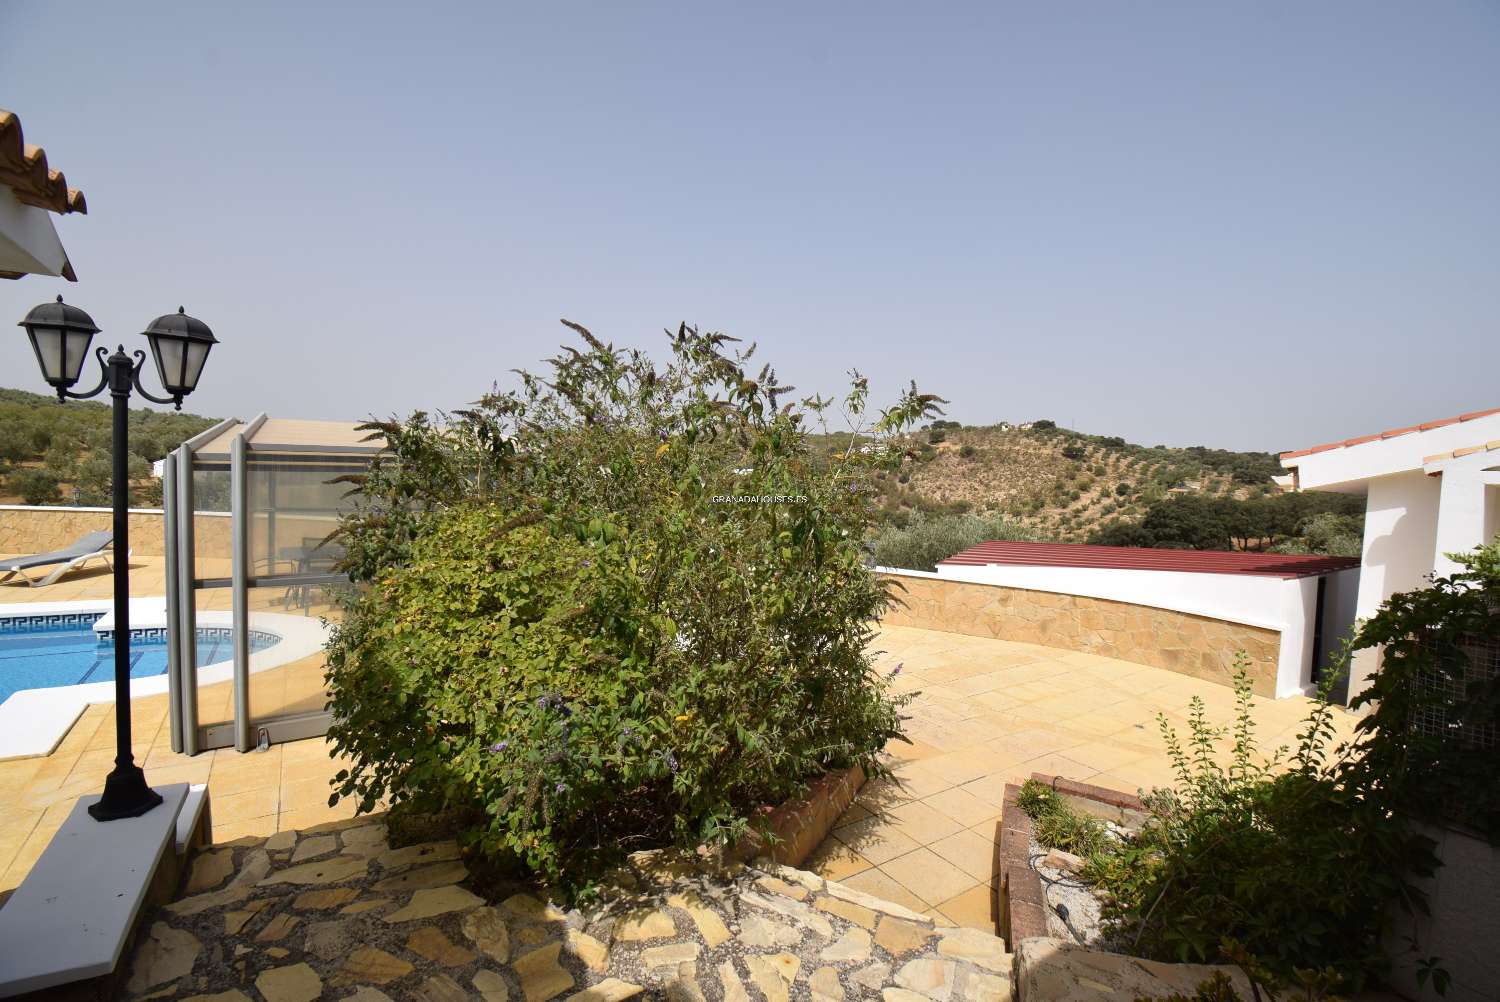 Fantastisk lantlig villa med annex, trädgård, stor pool och fantastisk utsikt över bergen